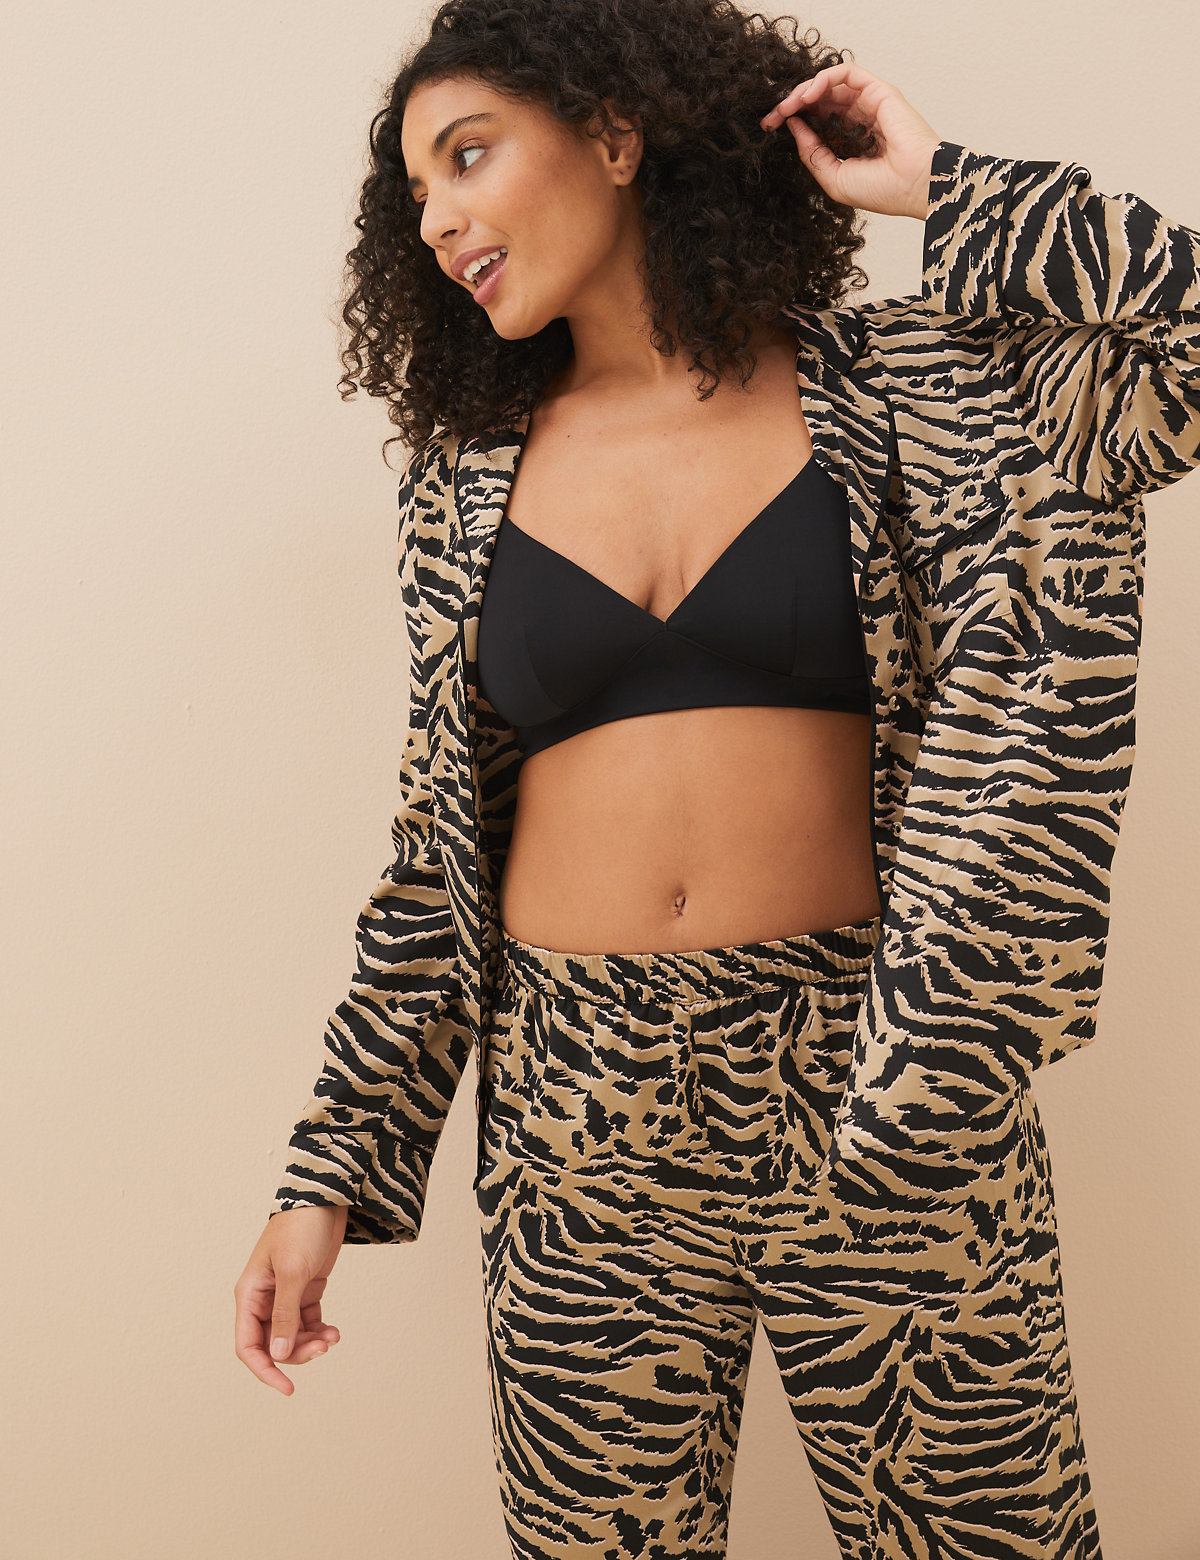 Dream Satin™ Zebra Revere Pyjama Set